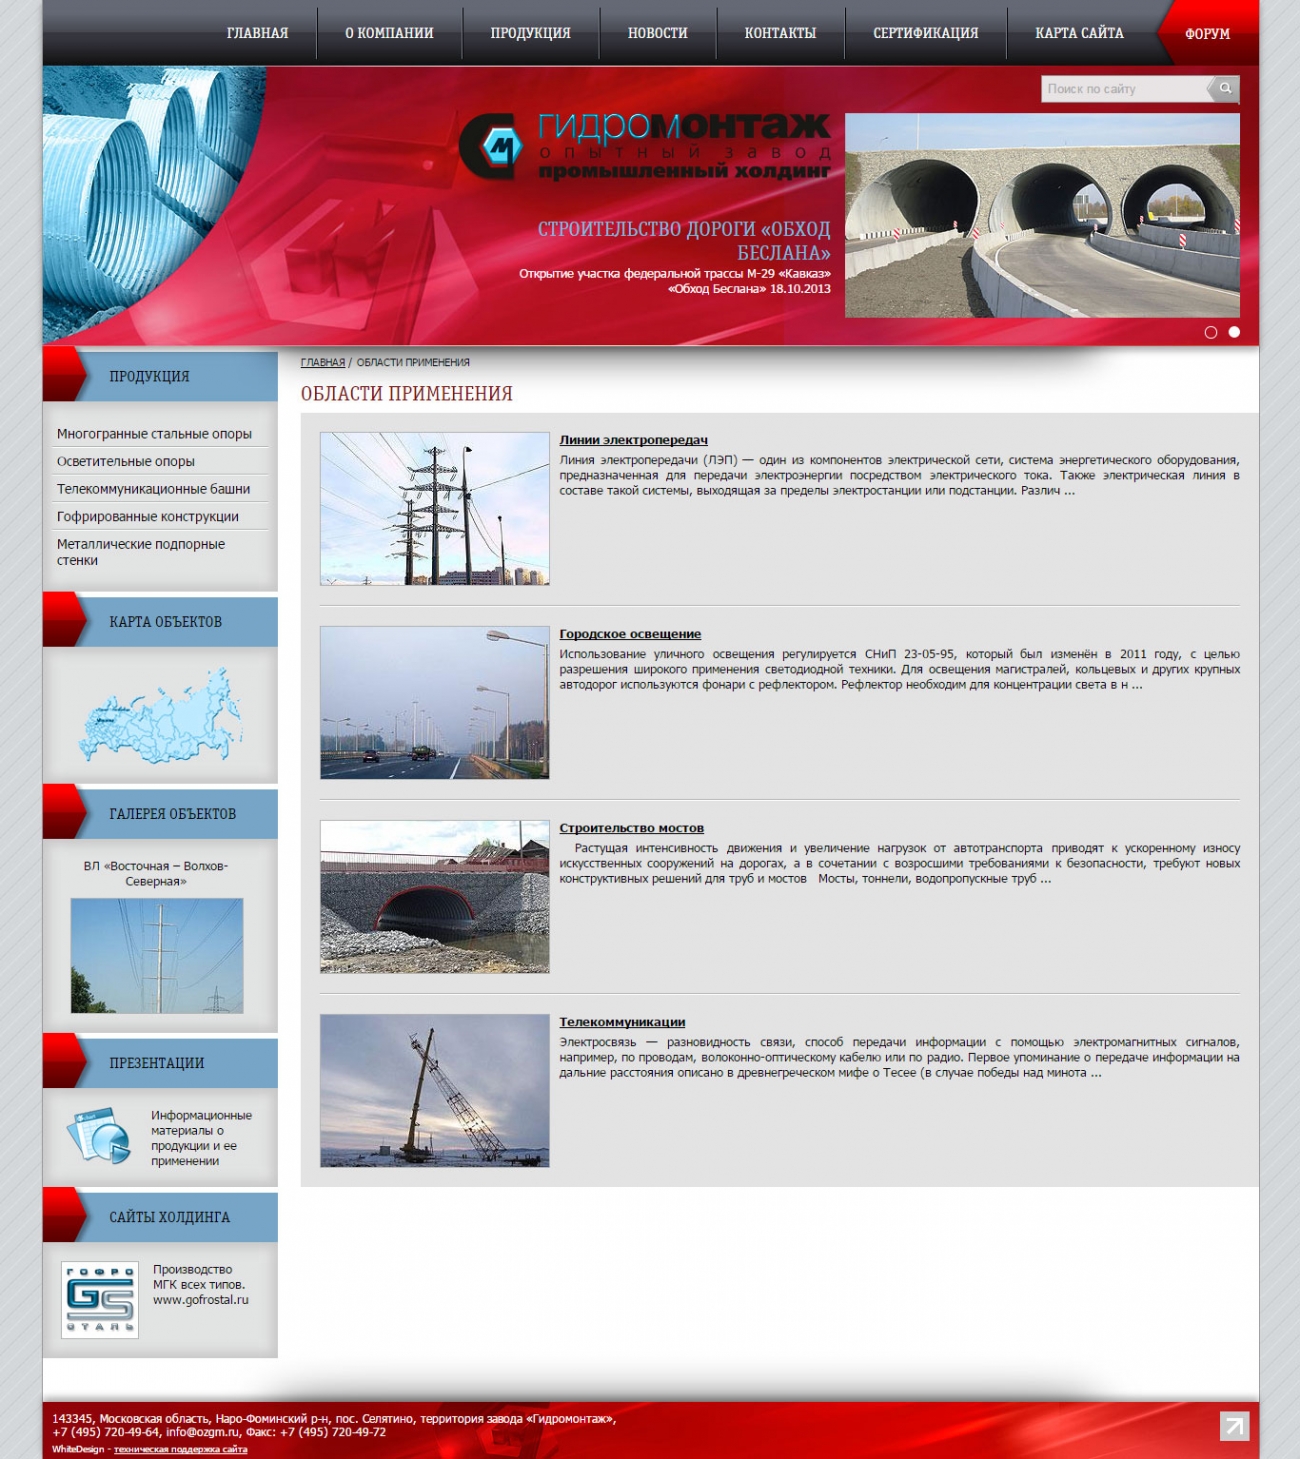 Шаблон страницы областей применения продукции сайта опытного завода «Гидромонтаж»